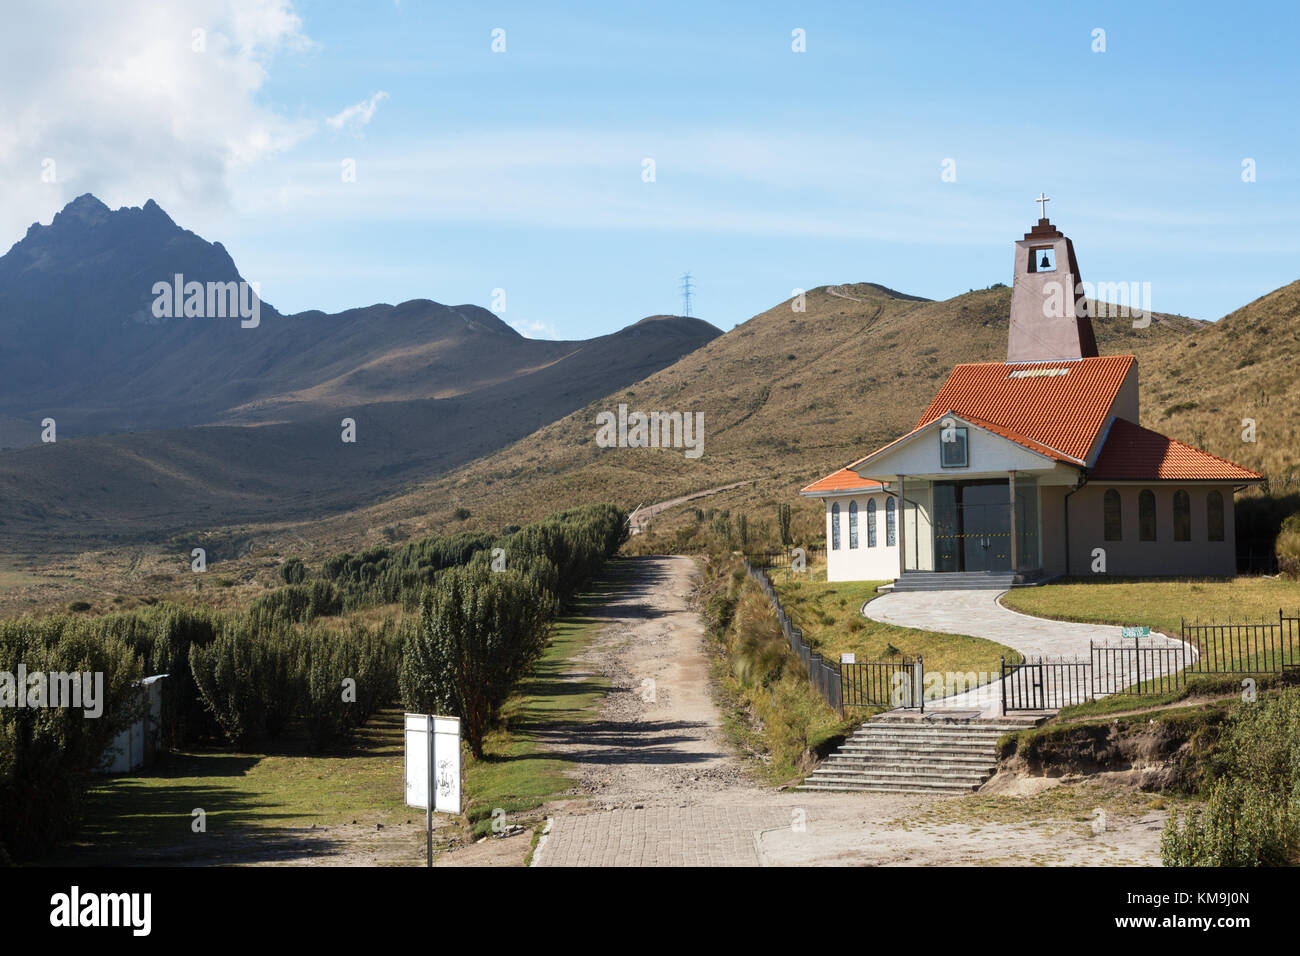 Volcan Pichincha, sentiers de randonnée et de la Dolorosa chapelle moderne dans les montagnes des Andes au-dessus de Quito, Equateur, Amérique du Sud Banque D'Images